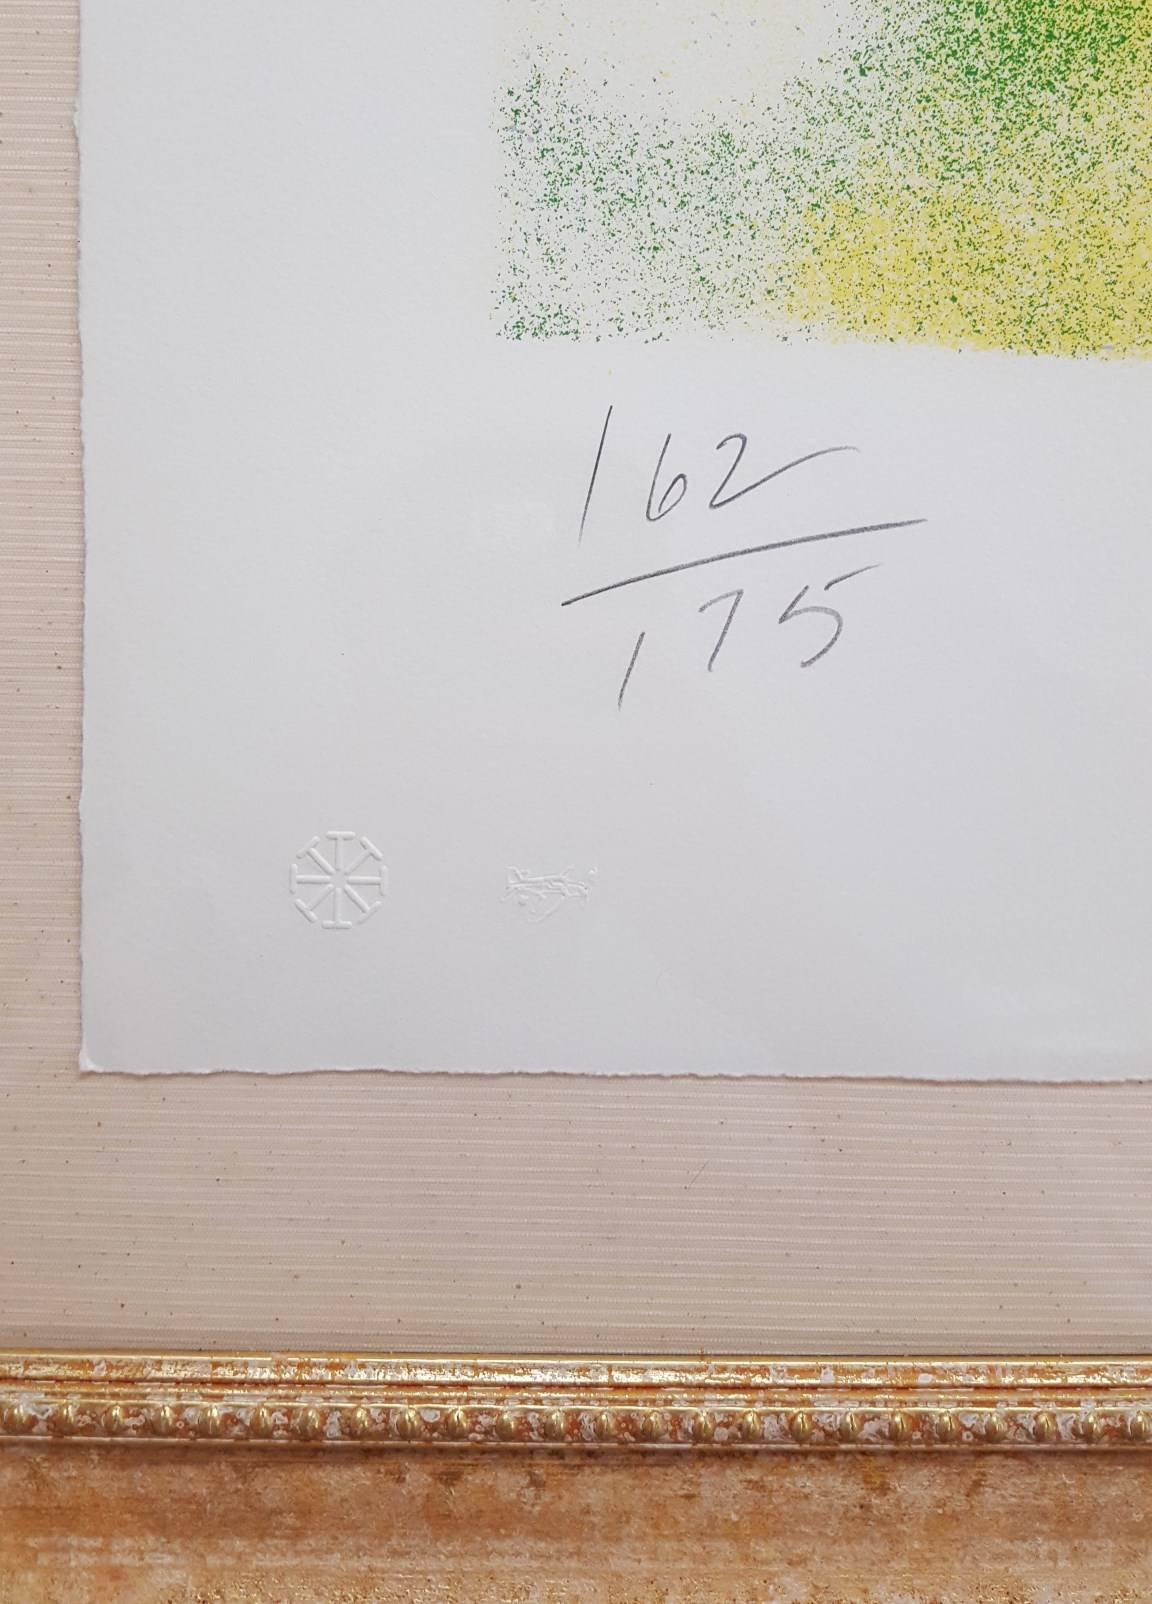 An original signed silkscreen by American artist John Chamberlain (1927-2011) titled 